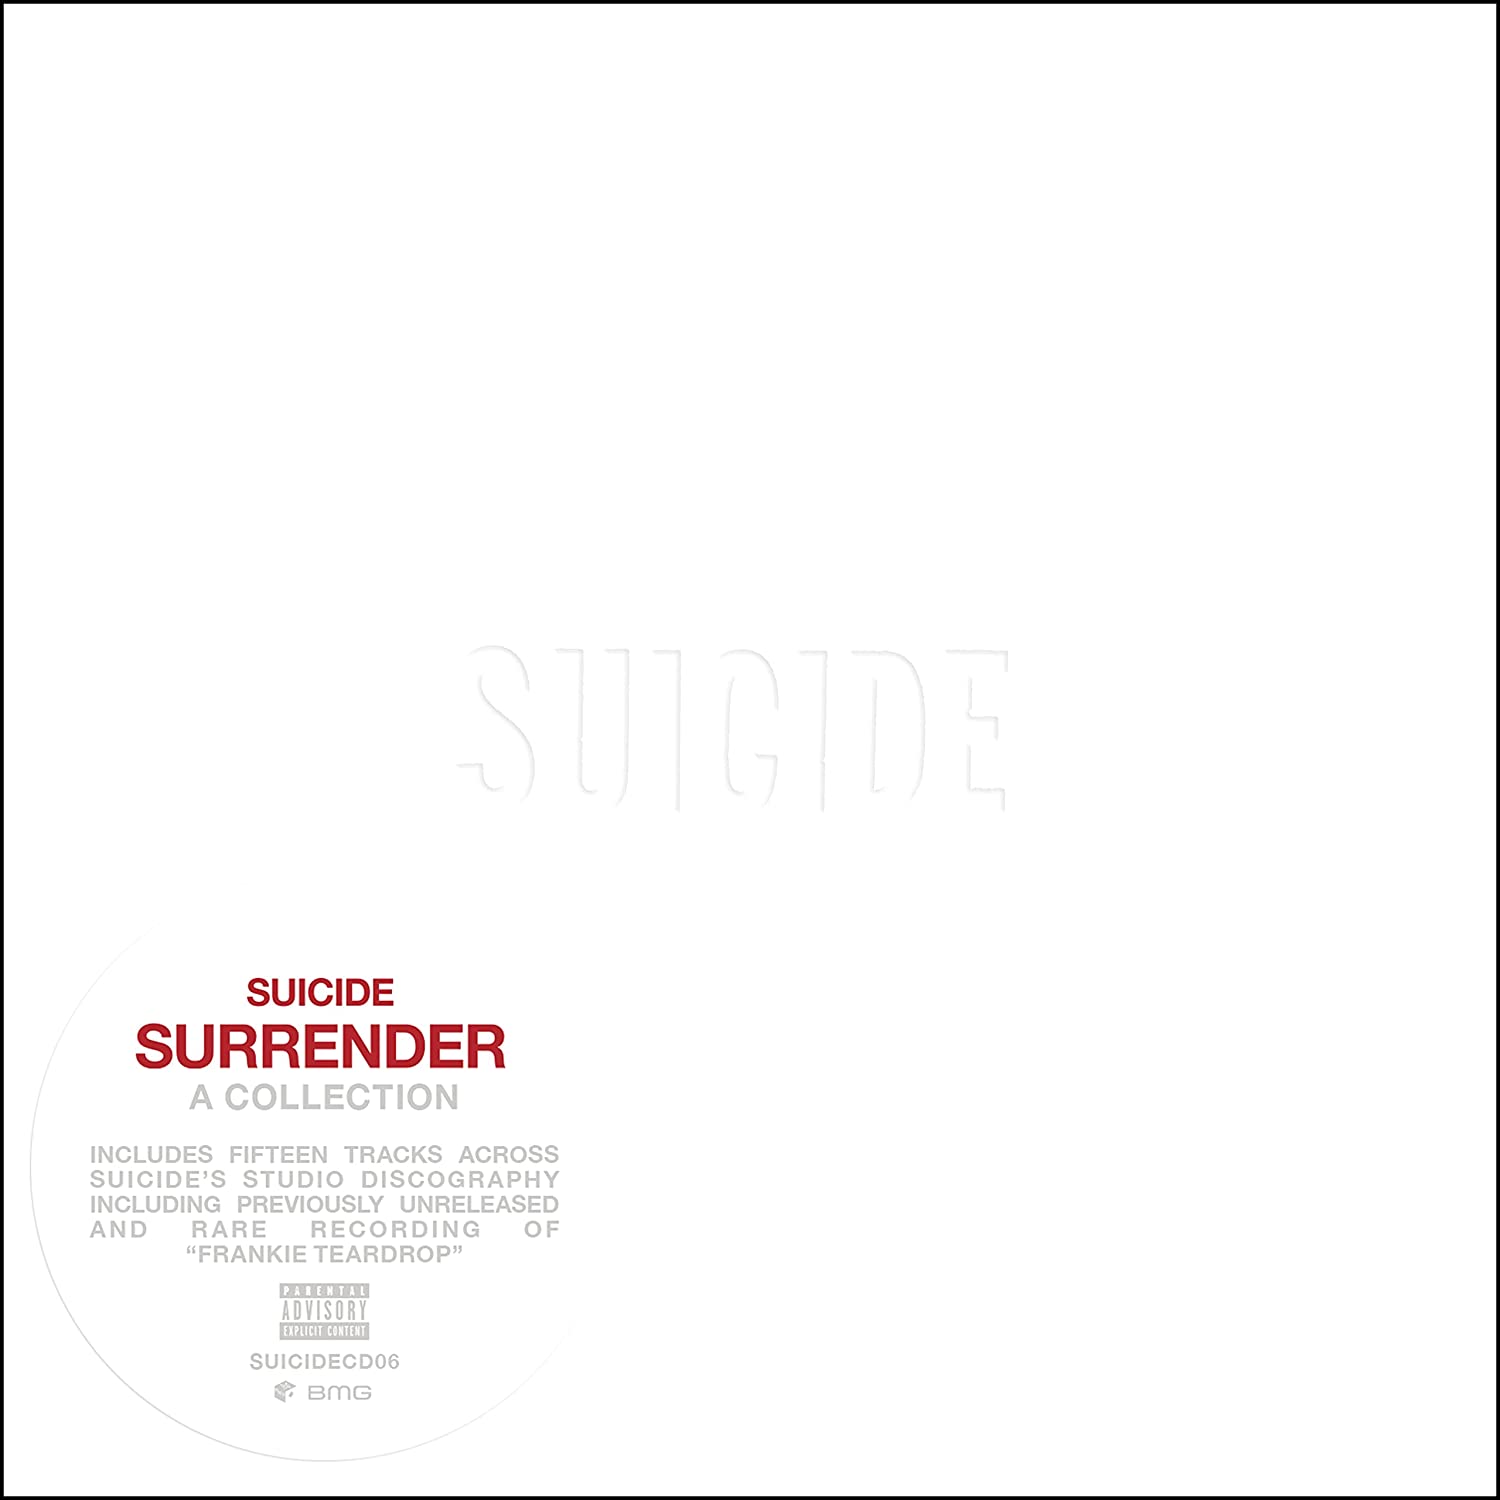 Suicide: Surrender - A Collection (Coloured Vinyl 2xLP)